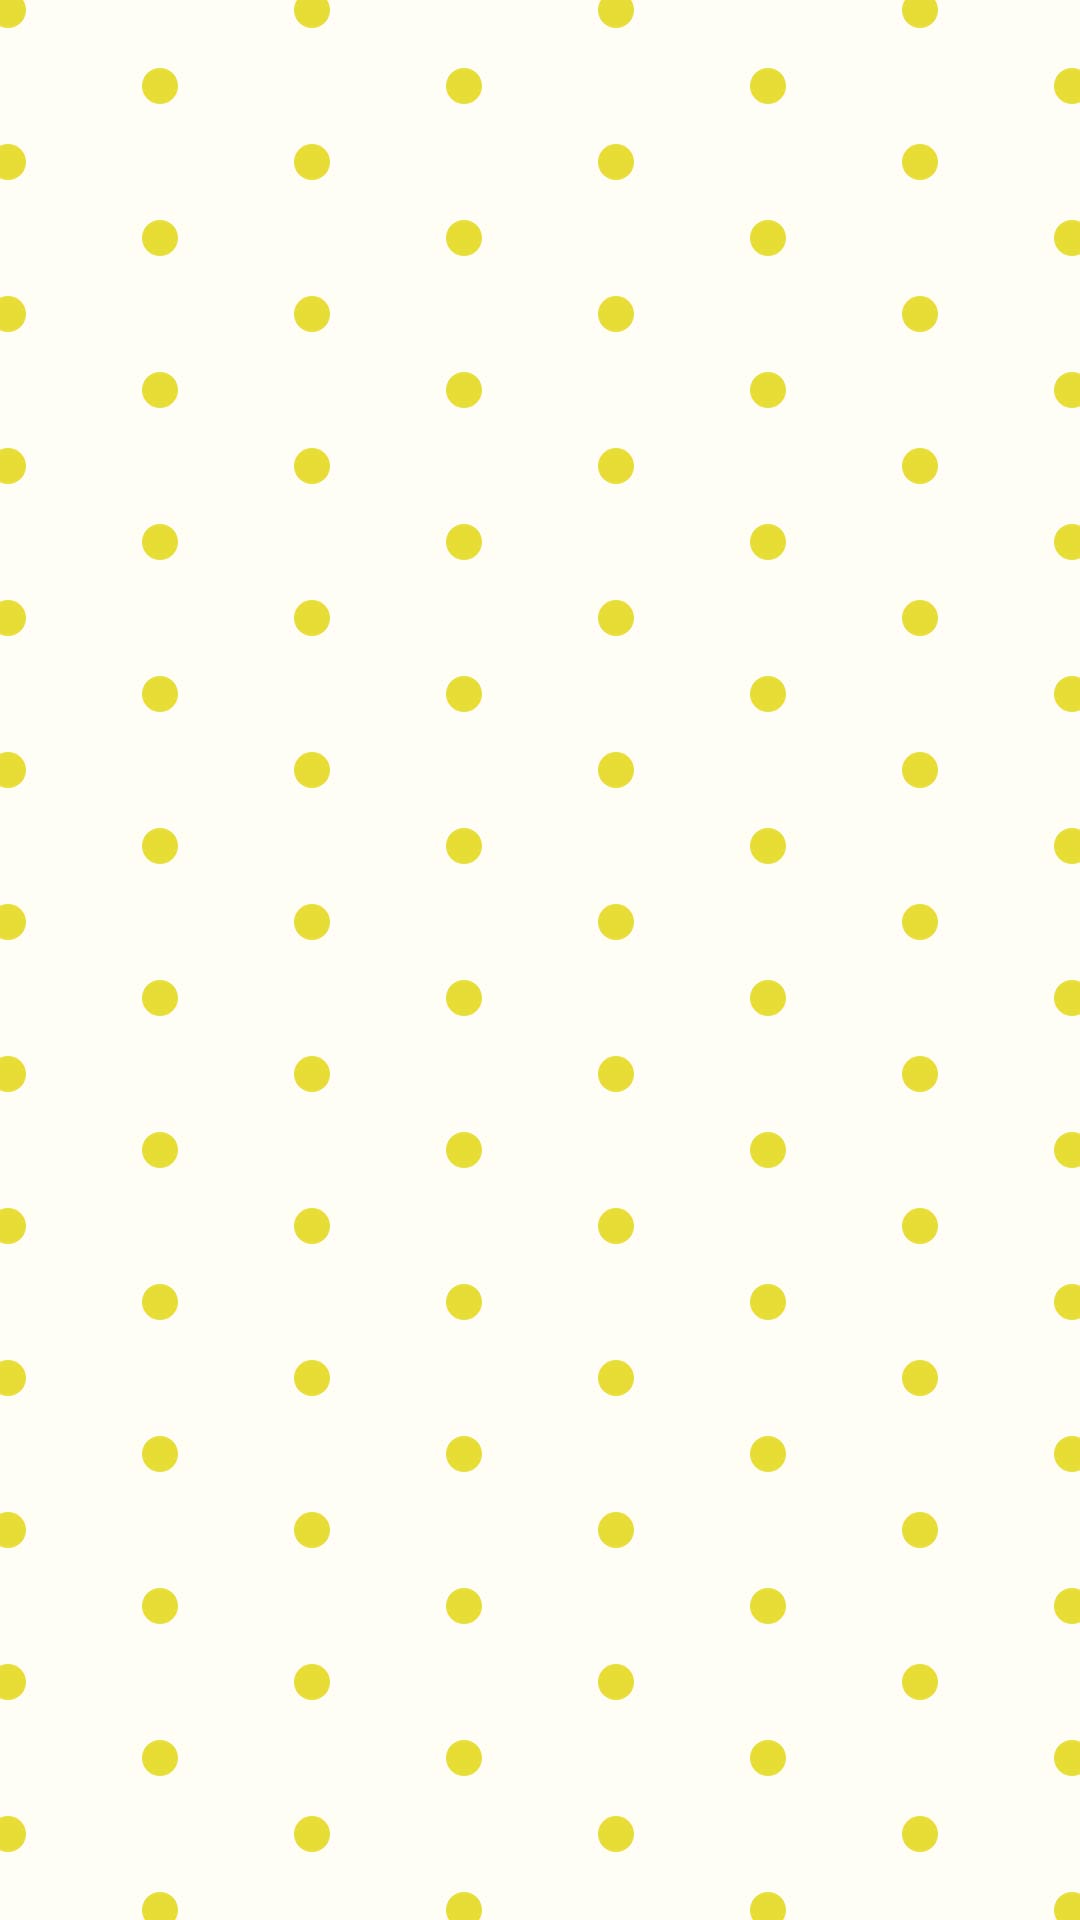 クリーム色の背景にシンプルな黄色のドットのパターン